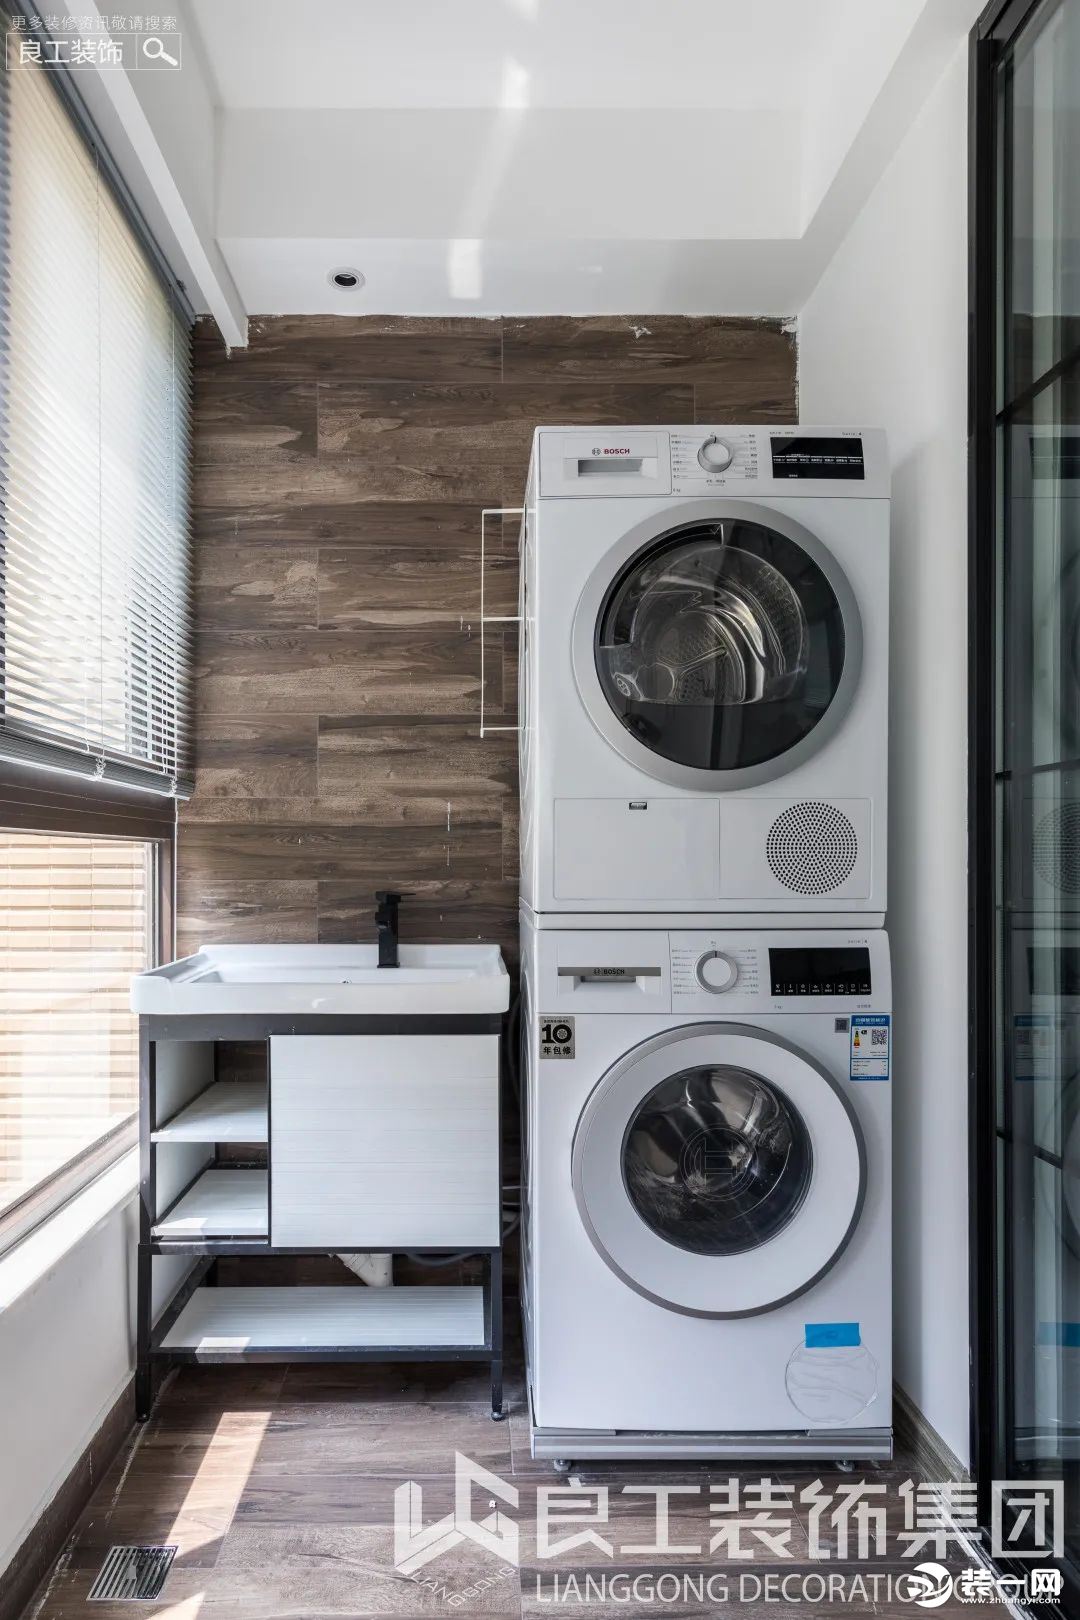 阳台做了洗衣机烘干机一体叠放，设计了功能齐全的洗衣区域